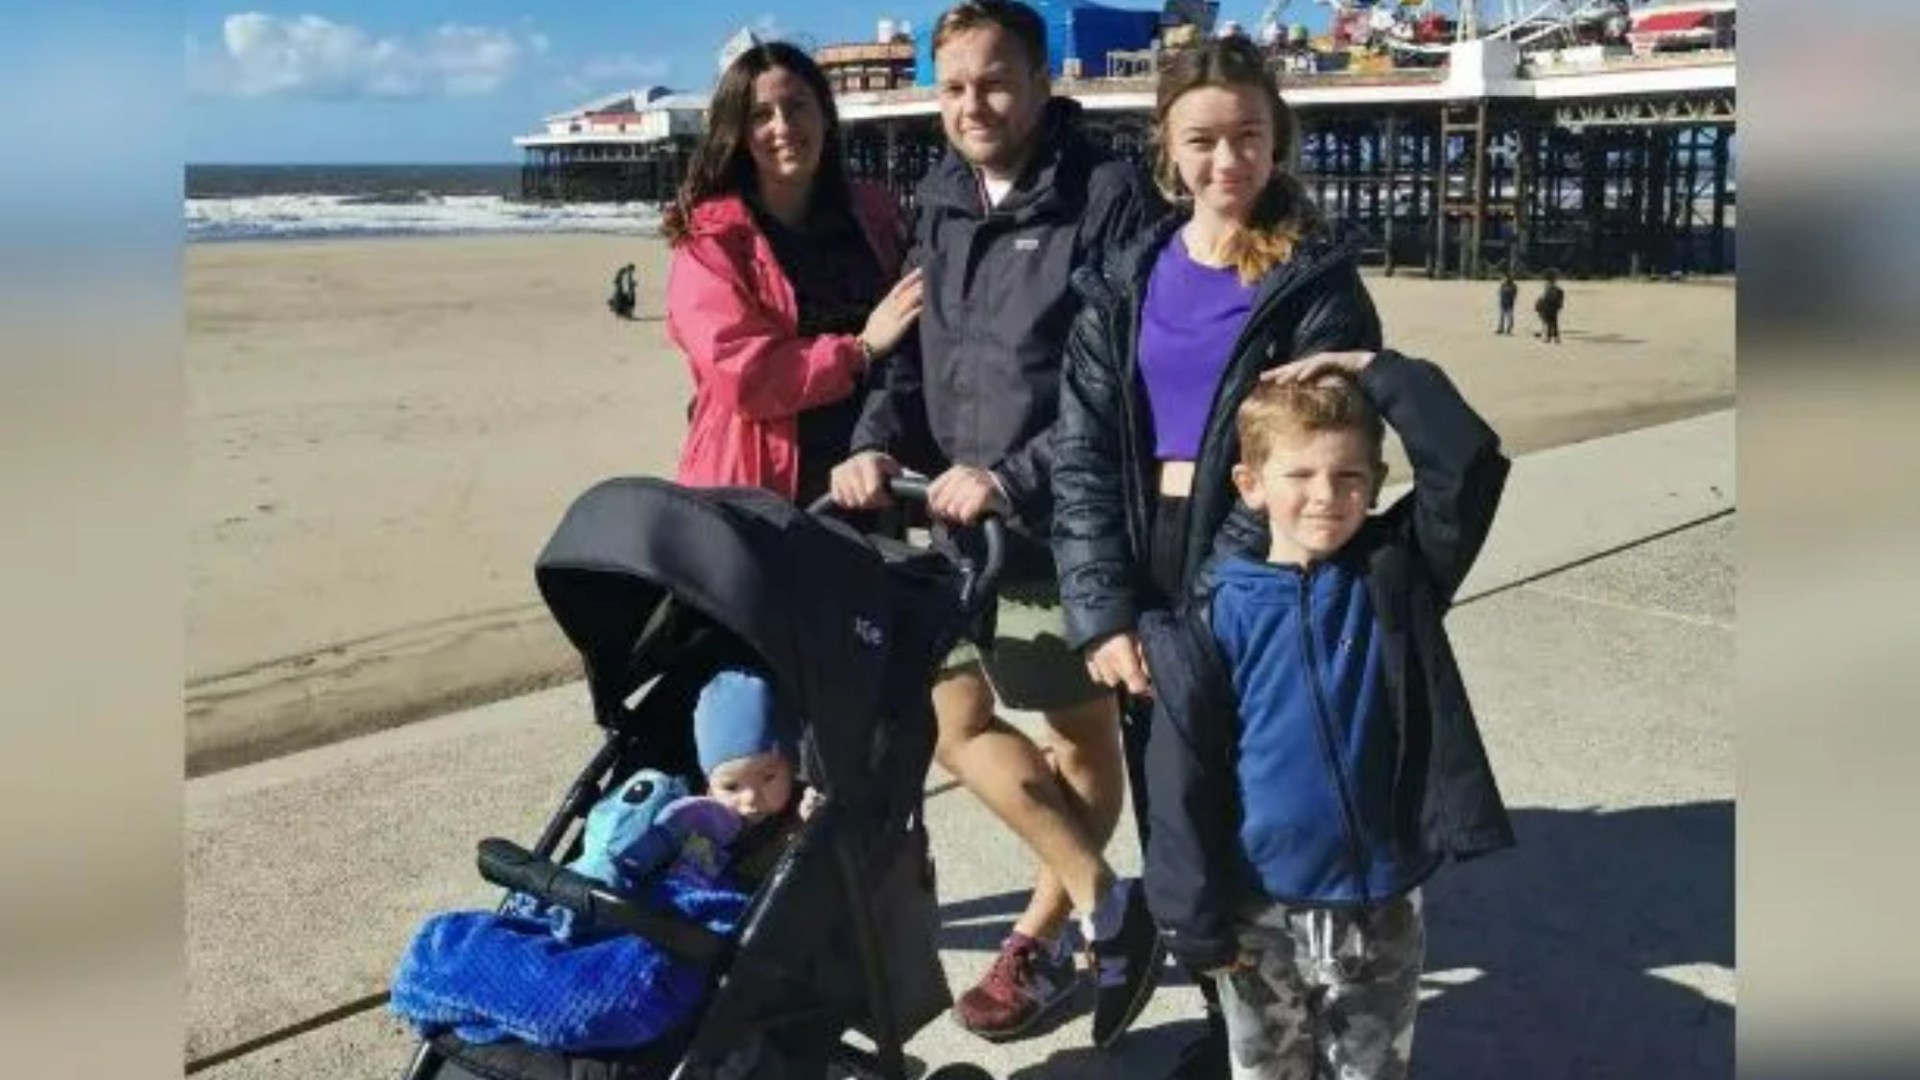 Mi familia de cinco miembros se perdió unas vacaciones de ensueño por valor de £2300 gracias al “caos absoluto” en el aeropuerto mis hijos estaban llorando